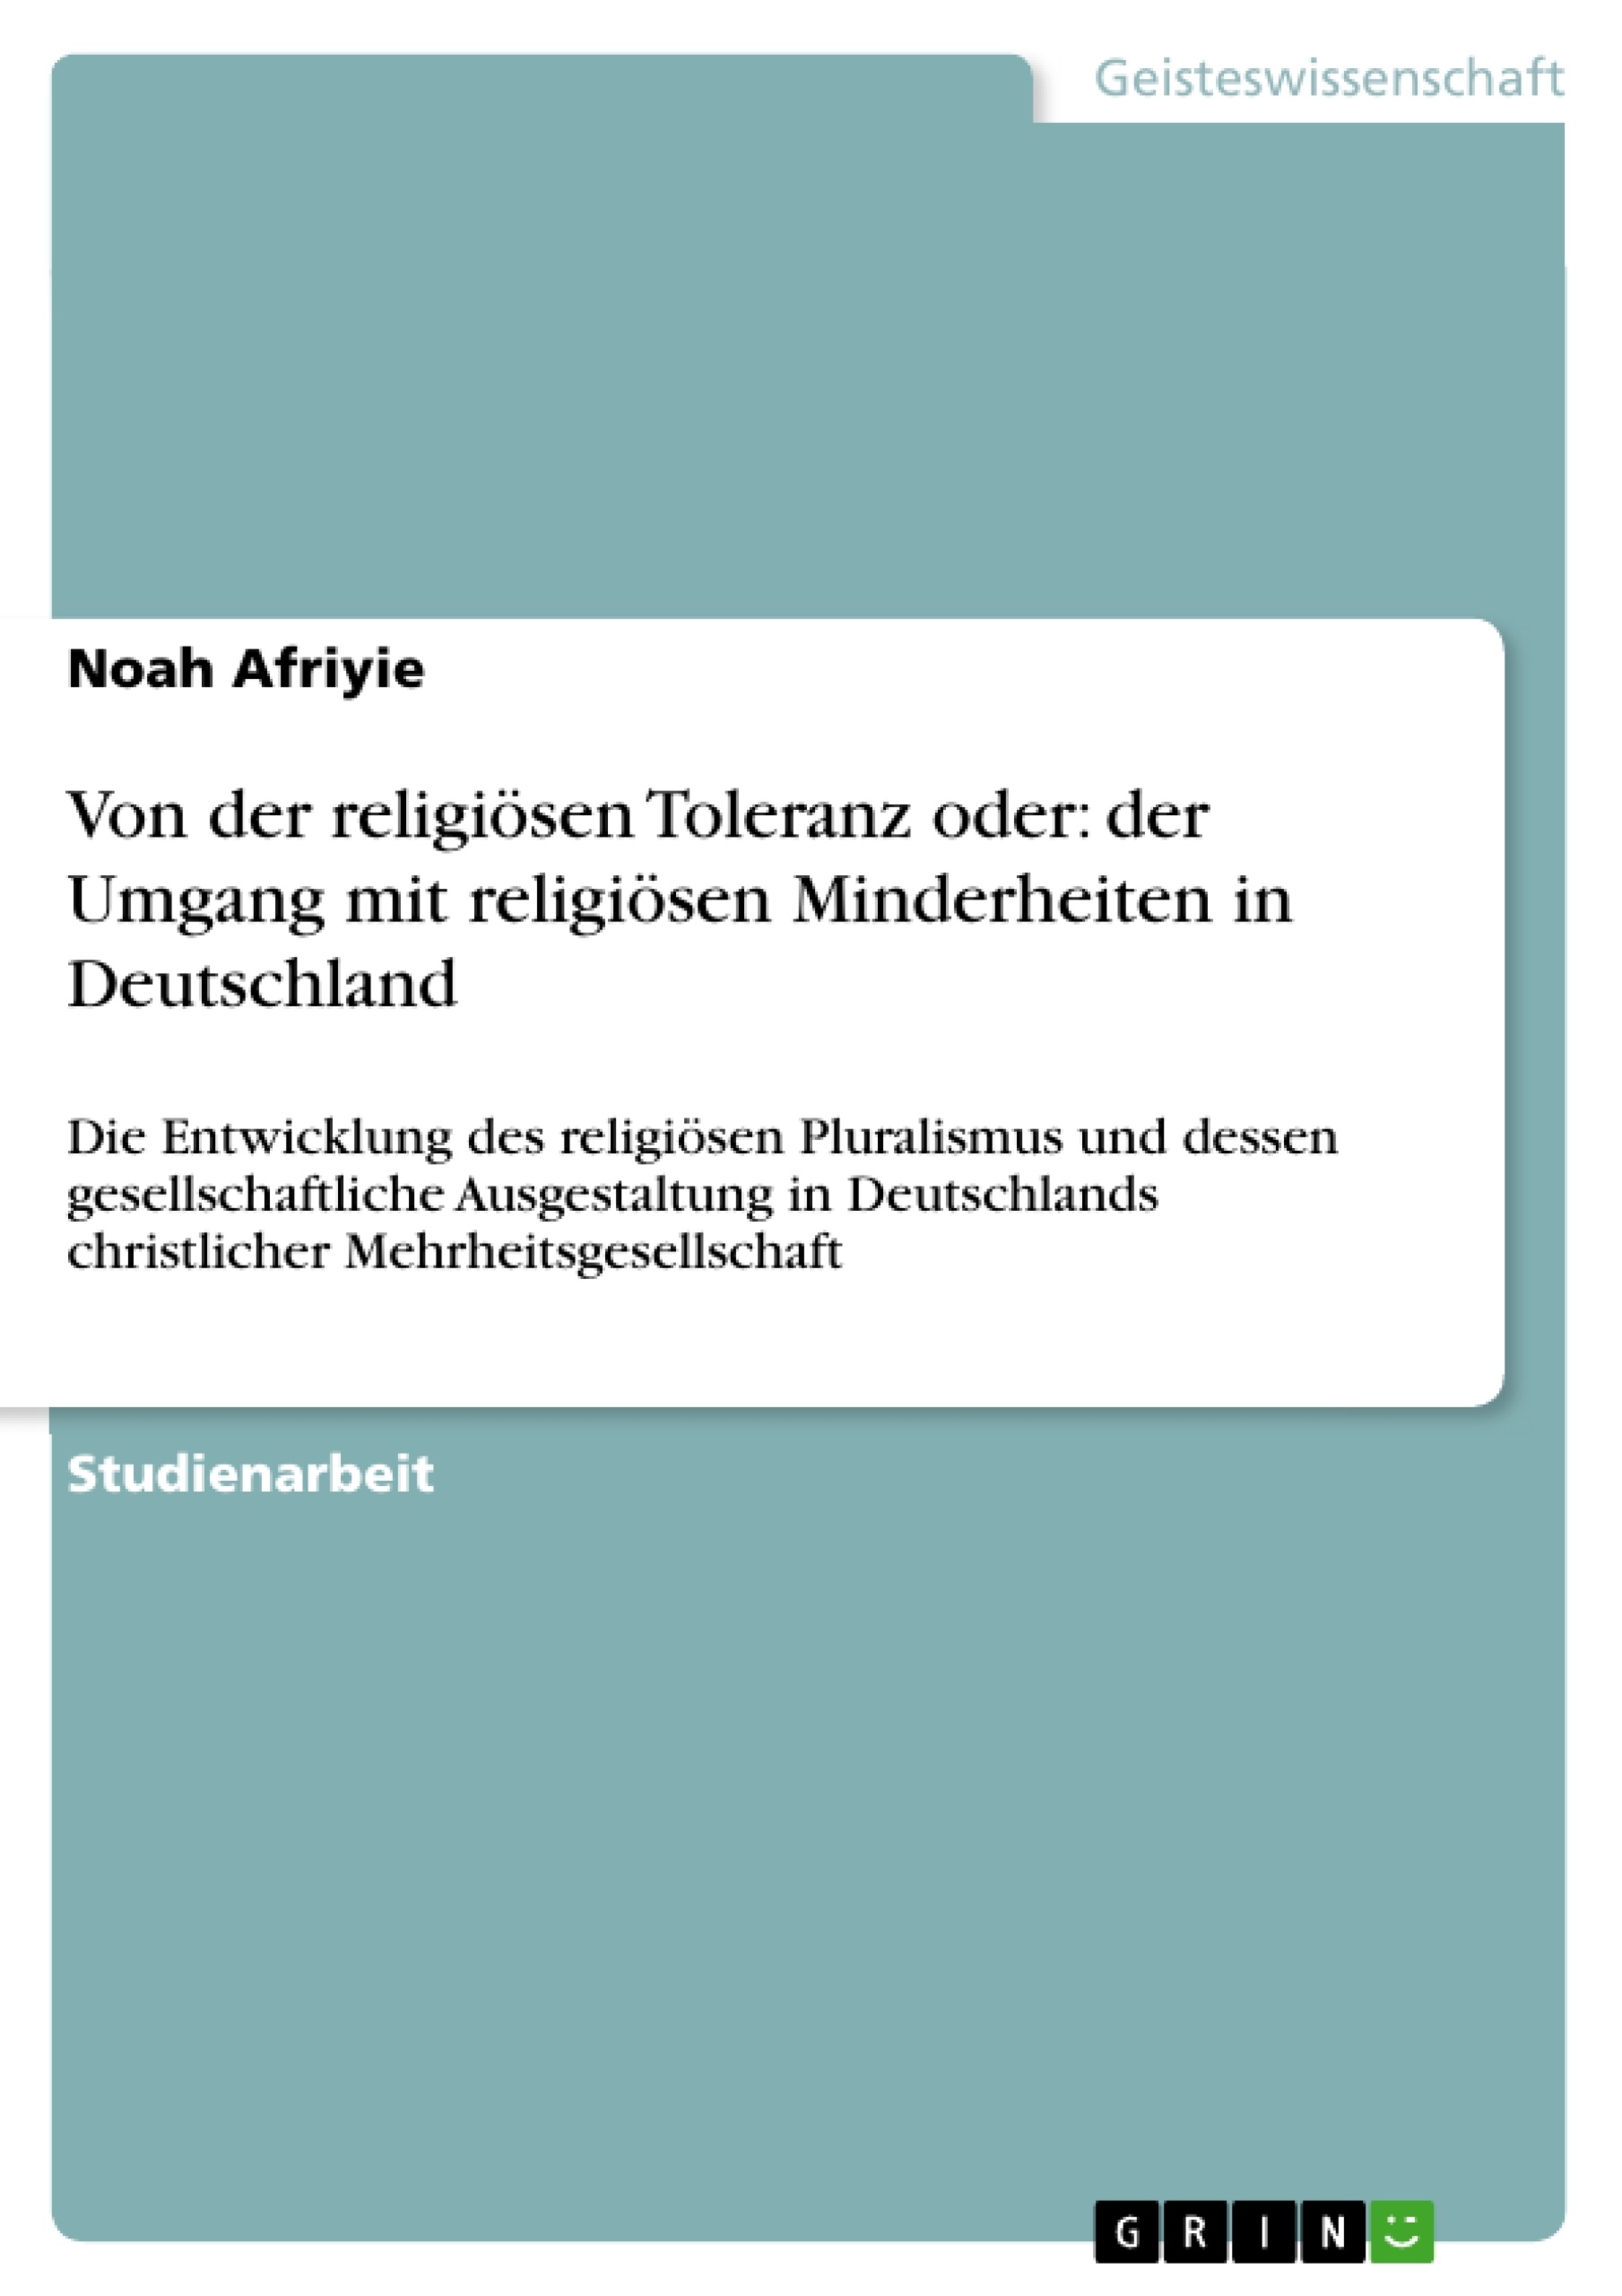 Título: Von der religiösen Toleranz oder: der Umgang mit religiösen Minderheiten in Deutschland